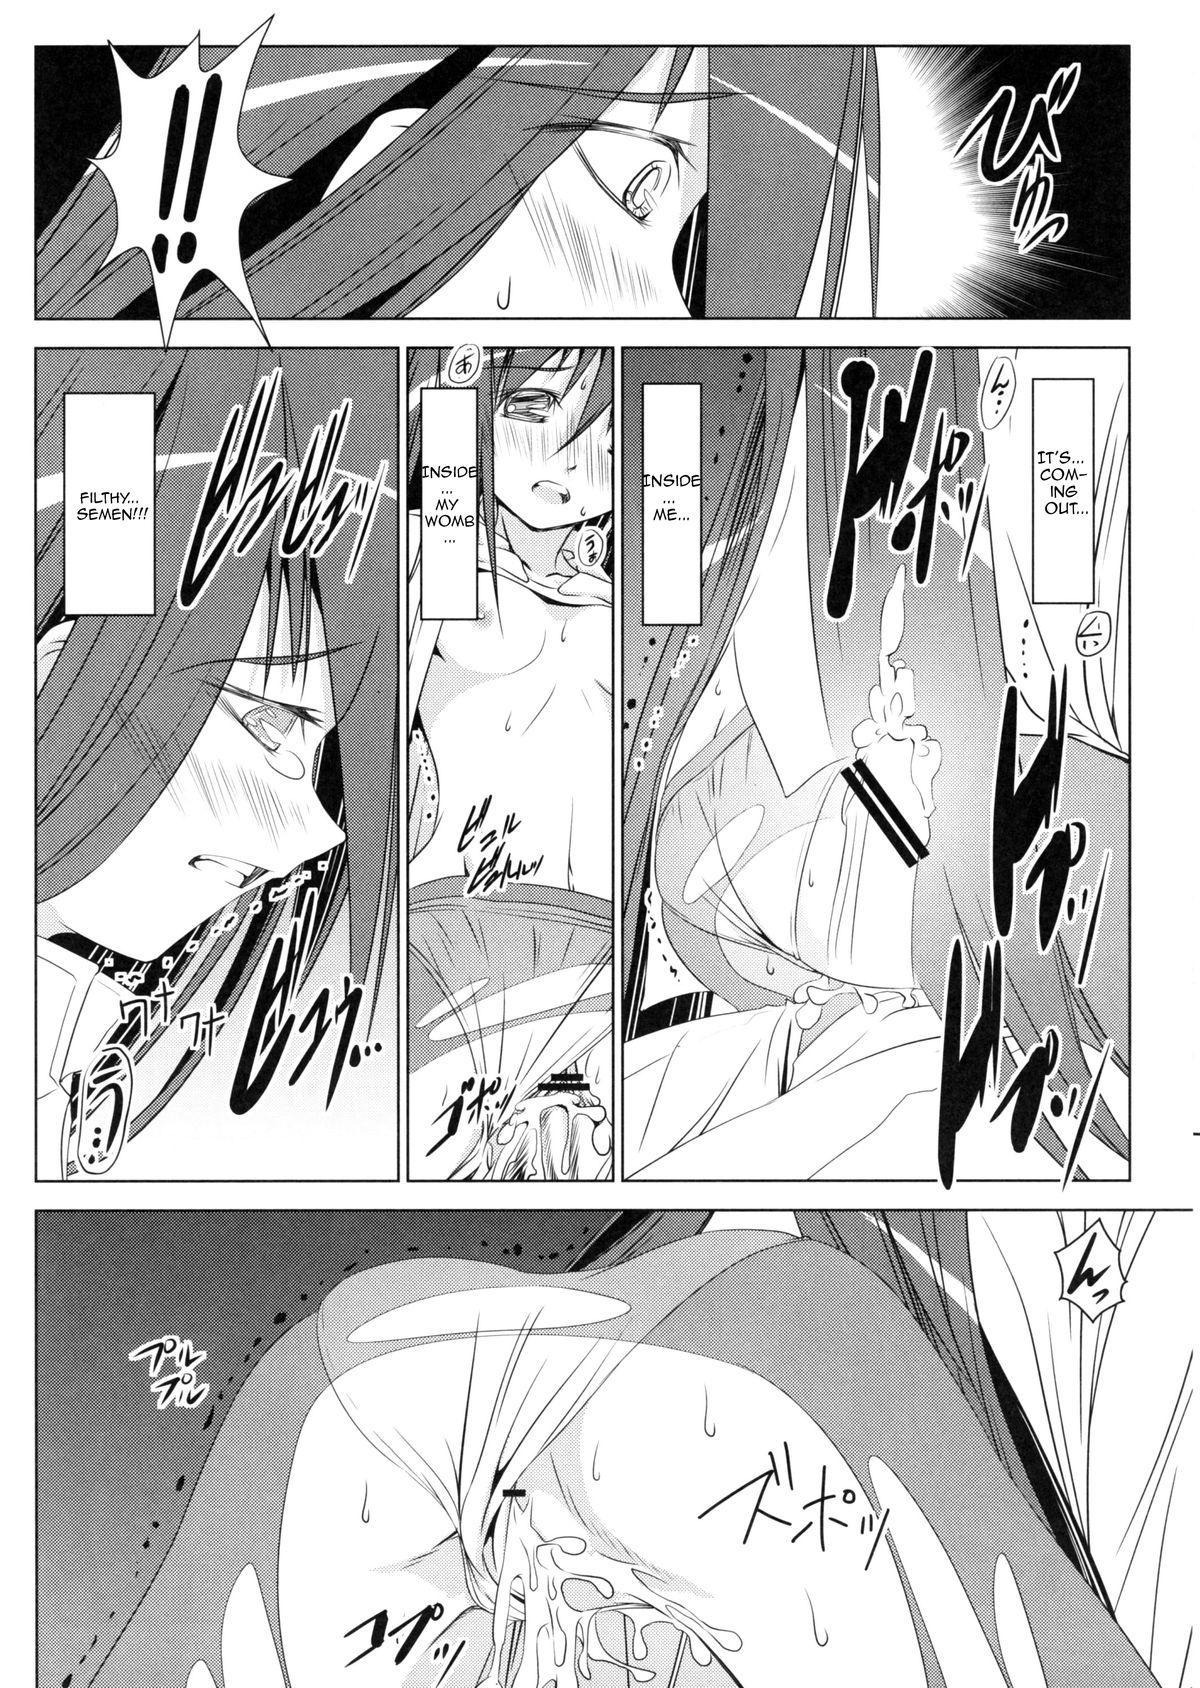 Amature Porn Homura's Humiliation - Puella magi madoka magica Hot Whores - Page 9